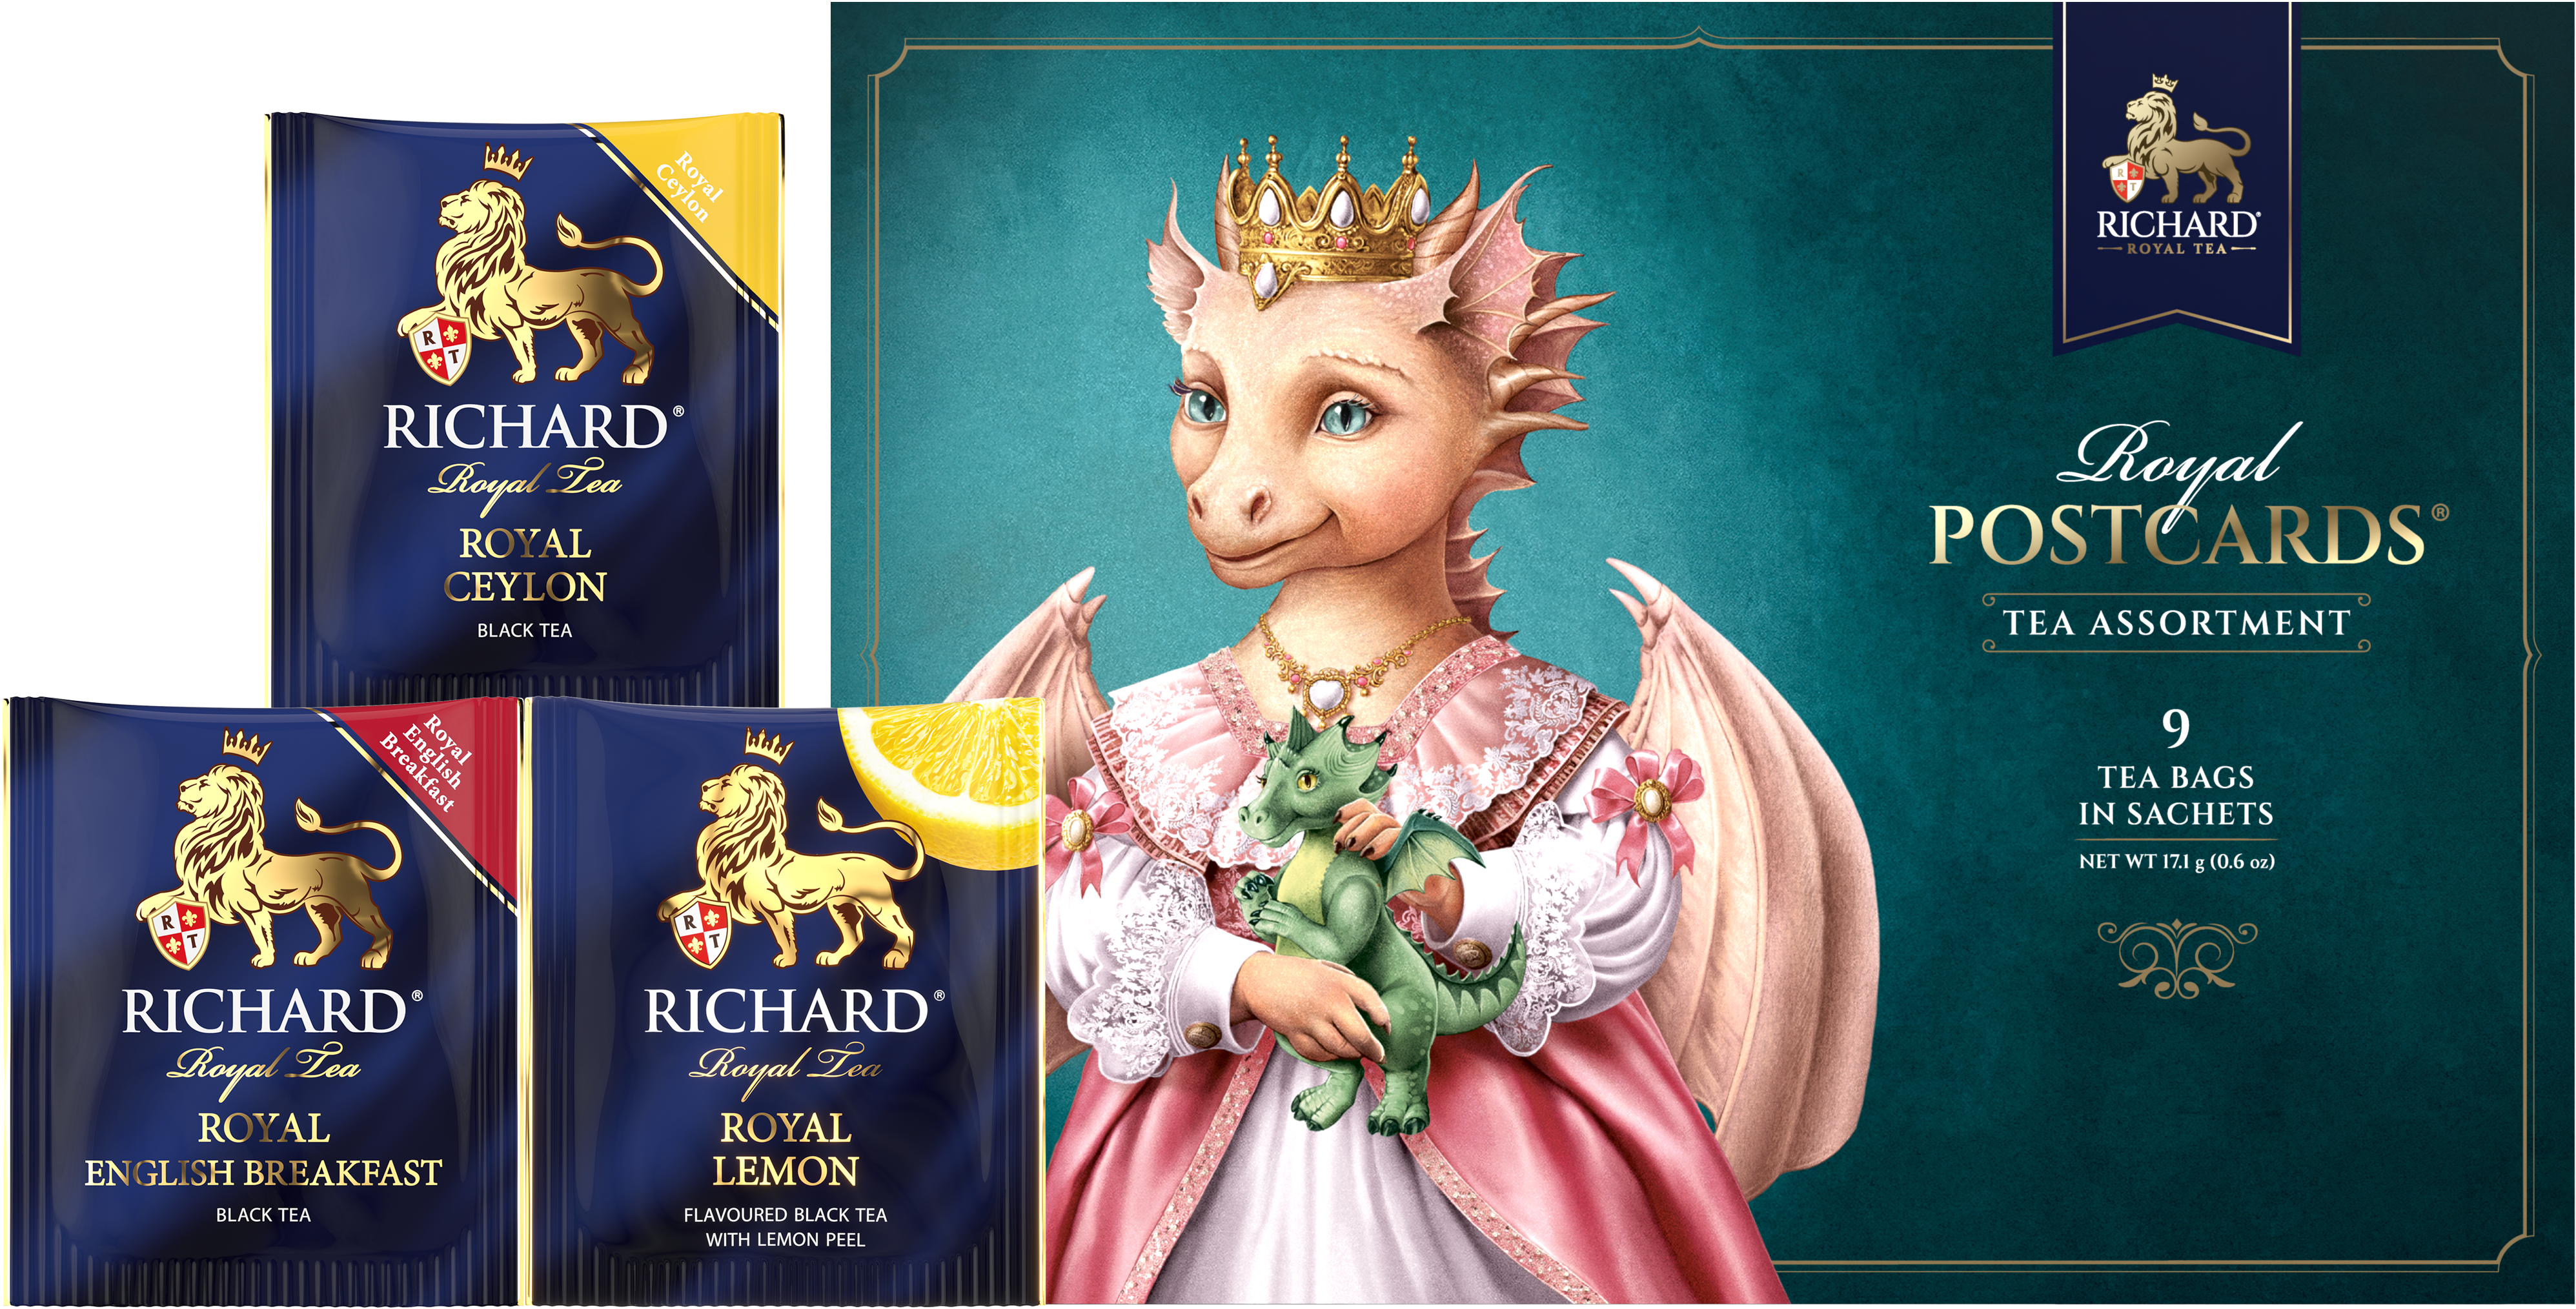 Richard Royal Királyi Képeslap, Sárkány Hercegnő, filteres fekete tea-válogatás, 17,1g